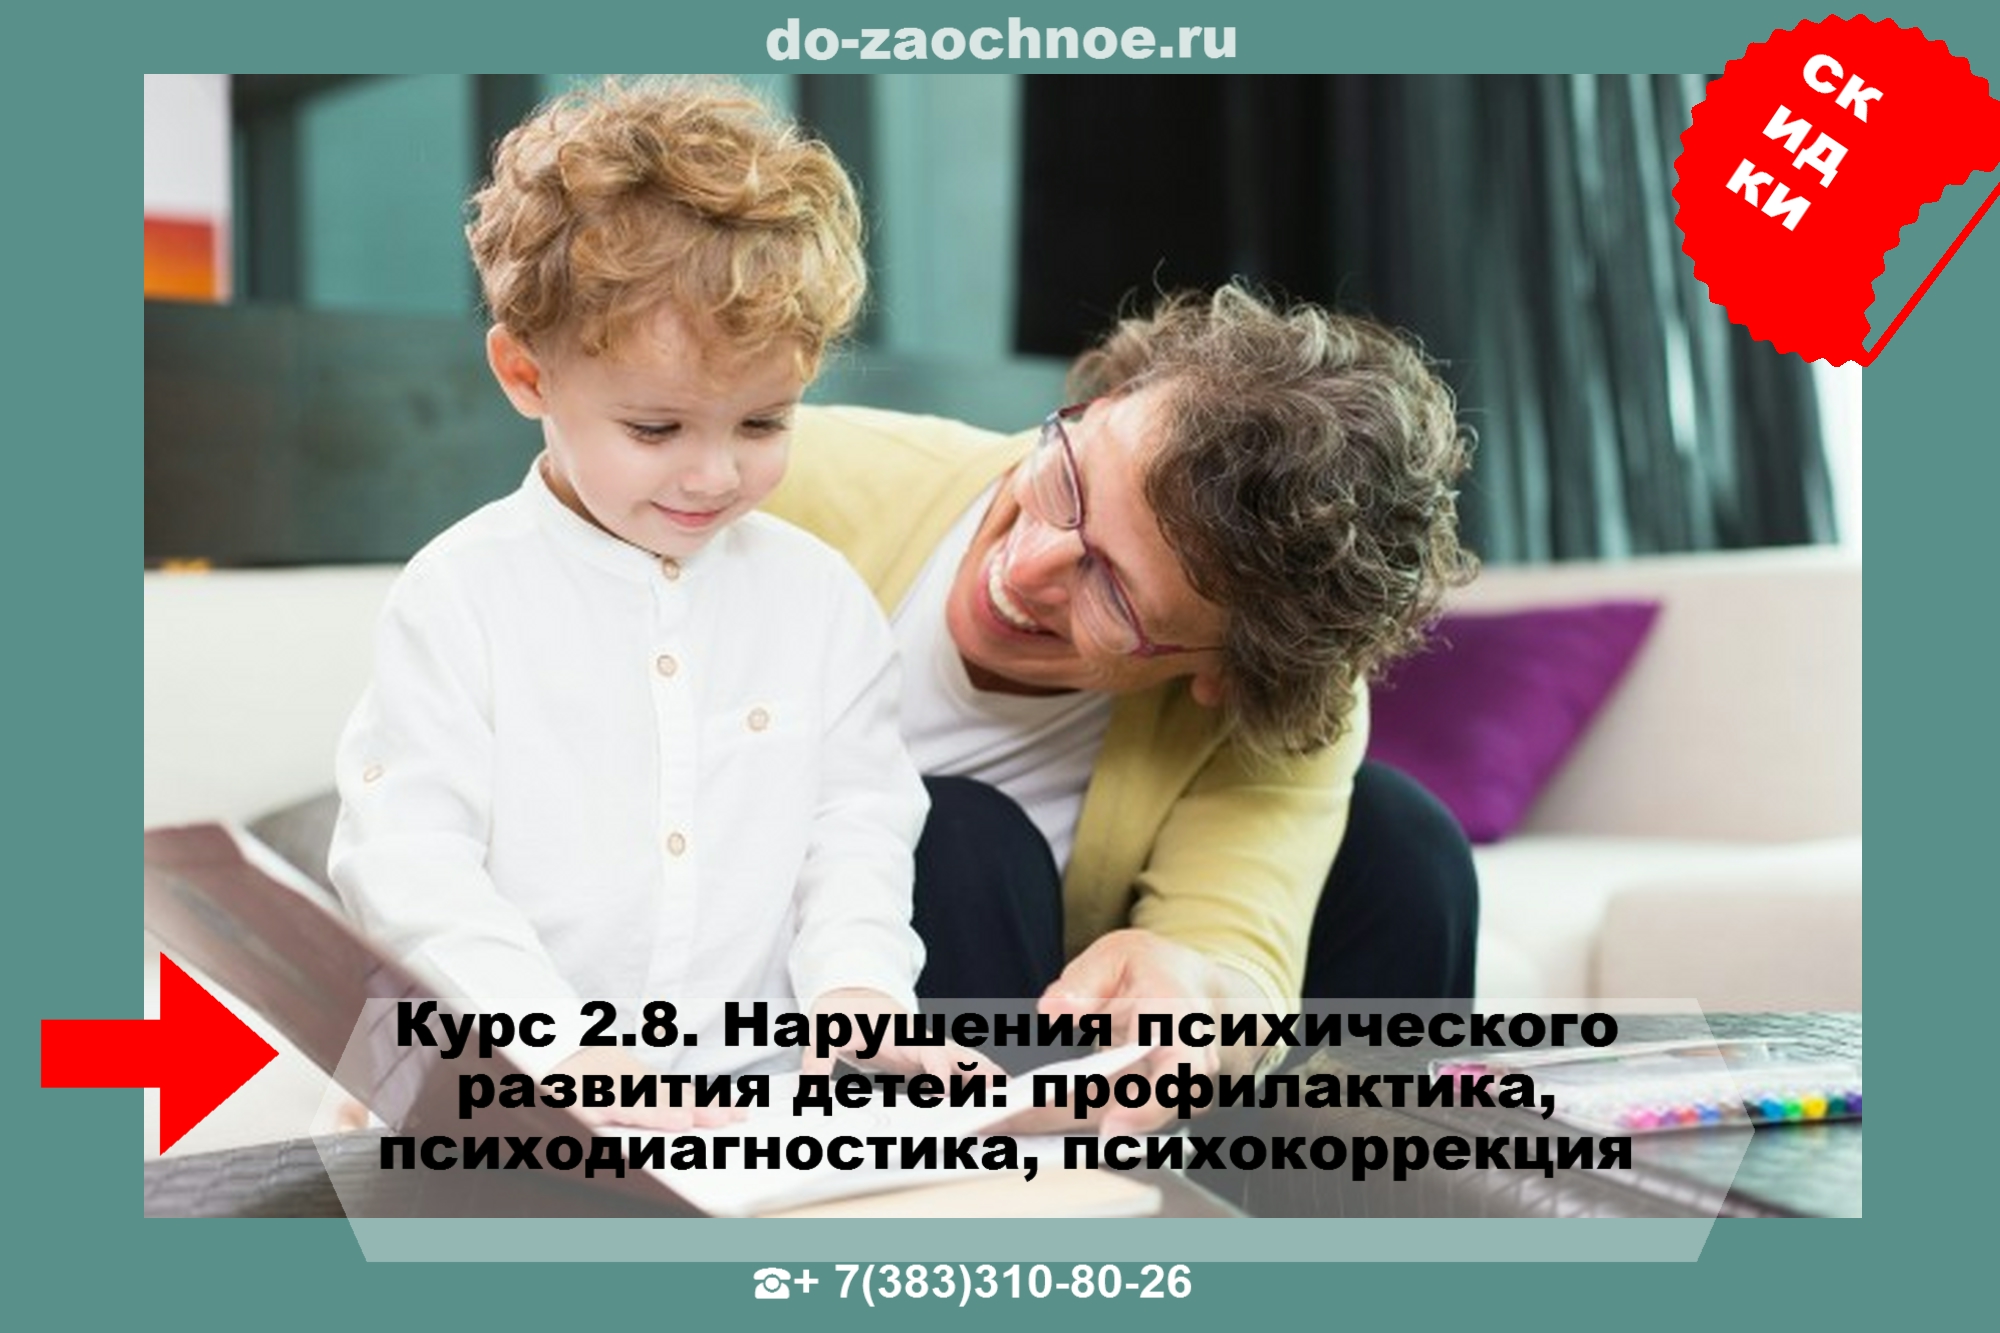 ИДПК дистанционные курсы Нарушения психического развития детей на do-zaochnoe.ru ТУТ!